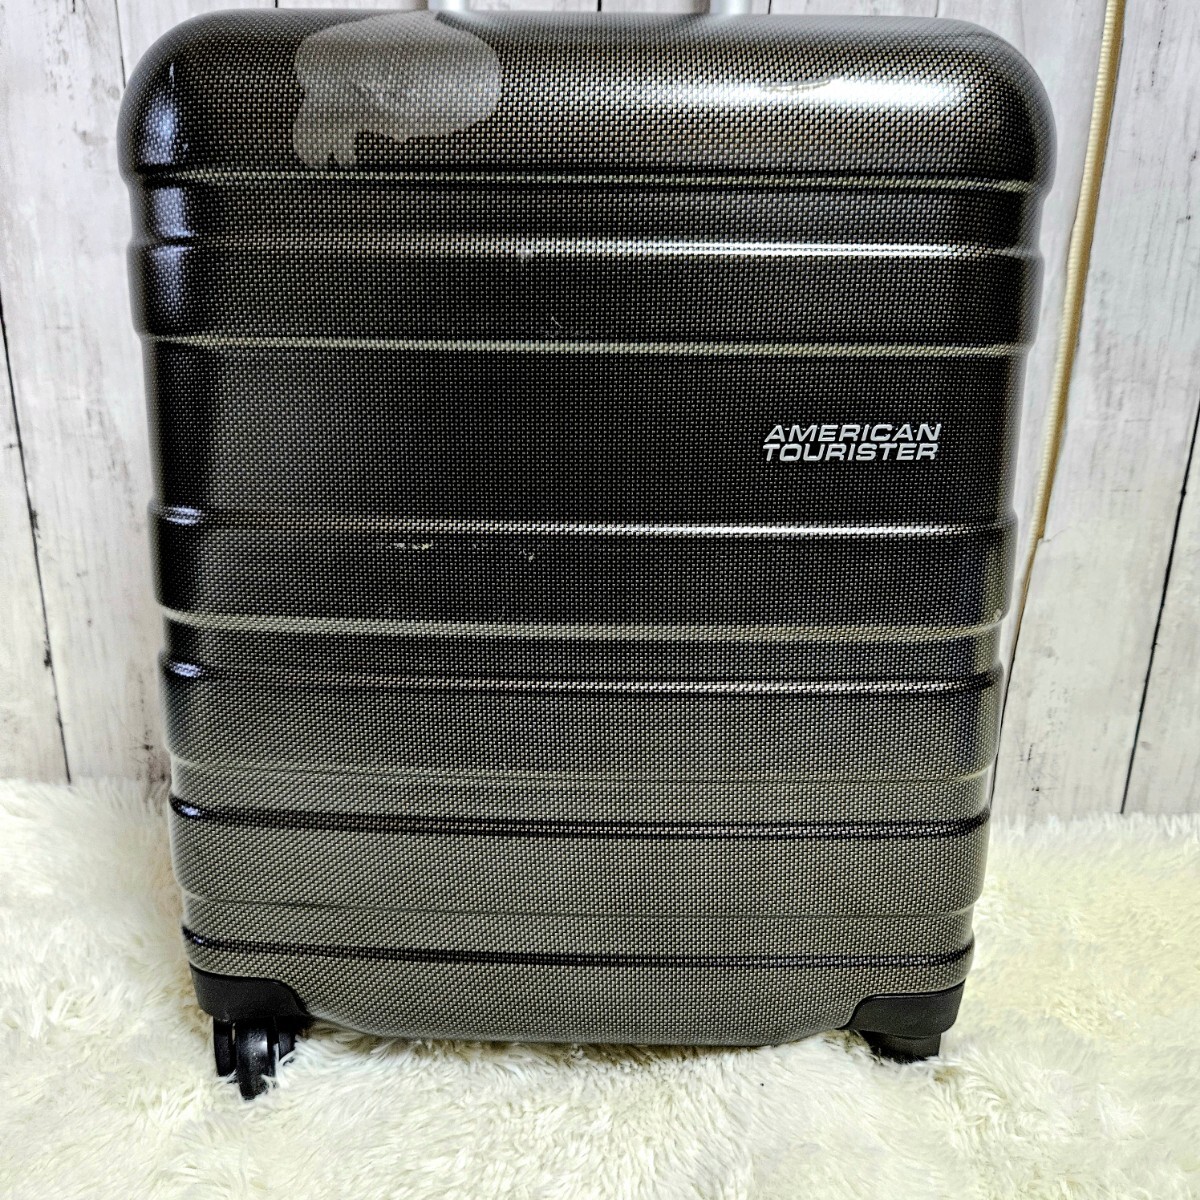 AMERICAN TOURISTER アメリカンツーリスター 機内持ち込み可 TSAロック付 ハード スーツケース キャリーケース キャリーバッグ の画像2